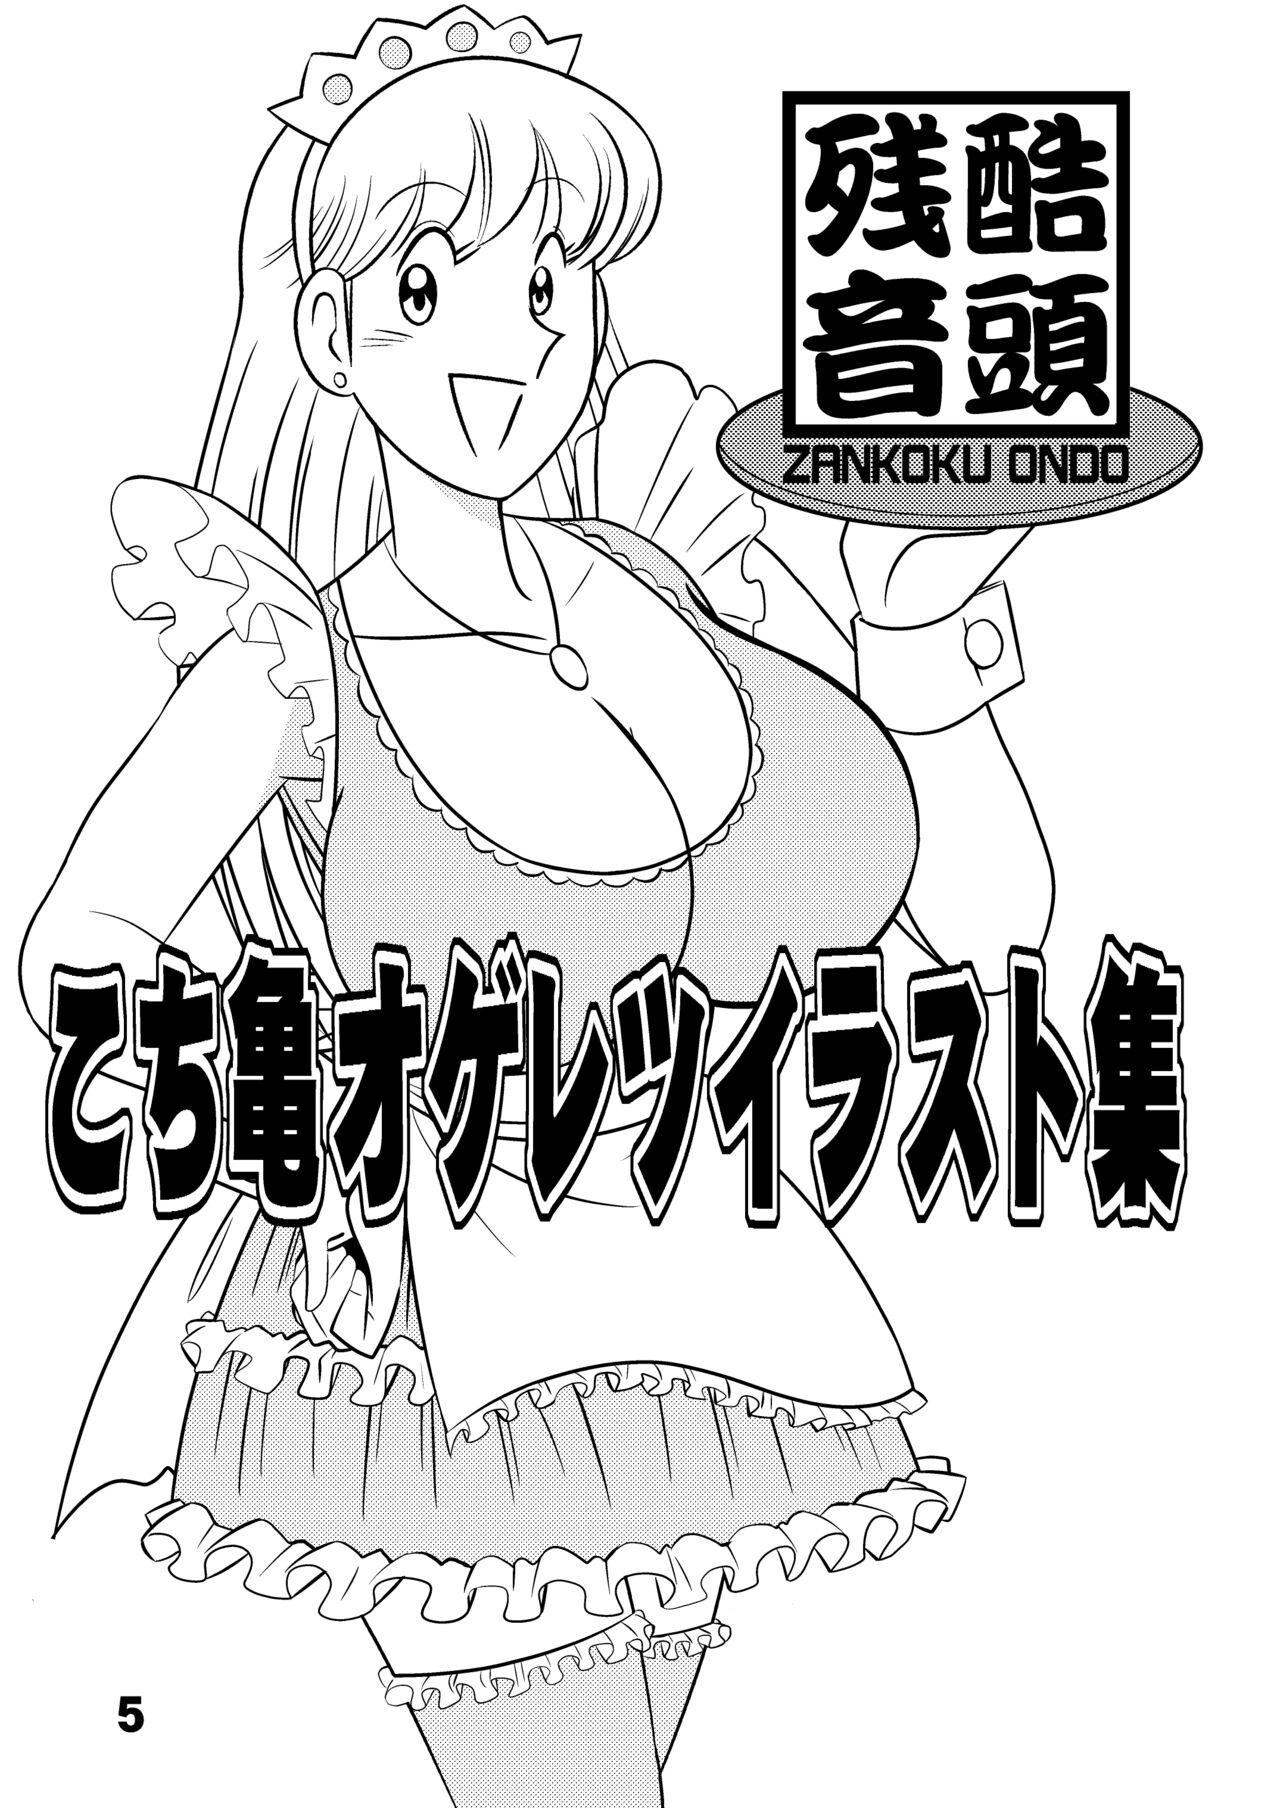 Female Domination こ○亀オゲレツイラスト集 1+2 - Kochikame Con - Page 5